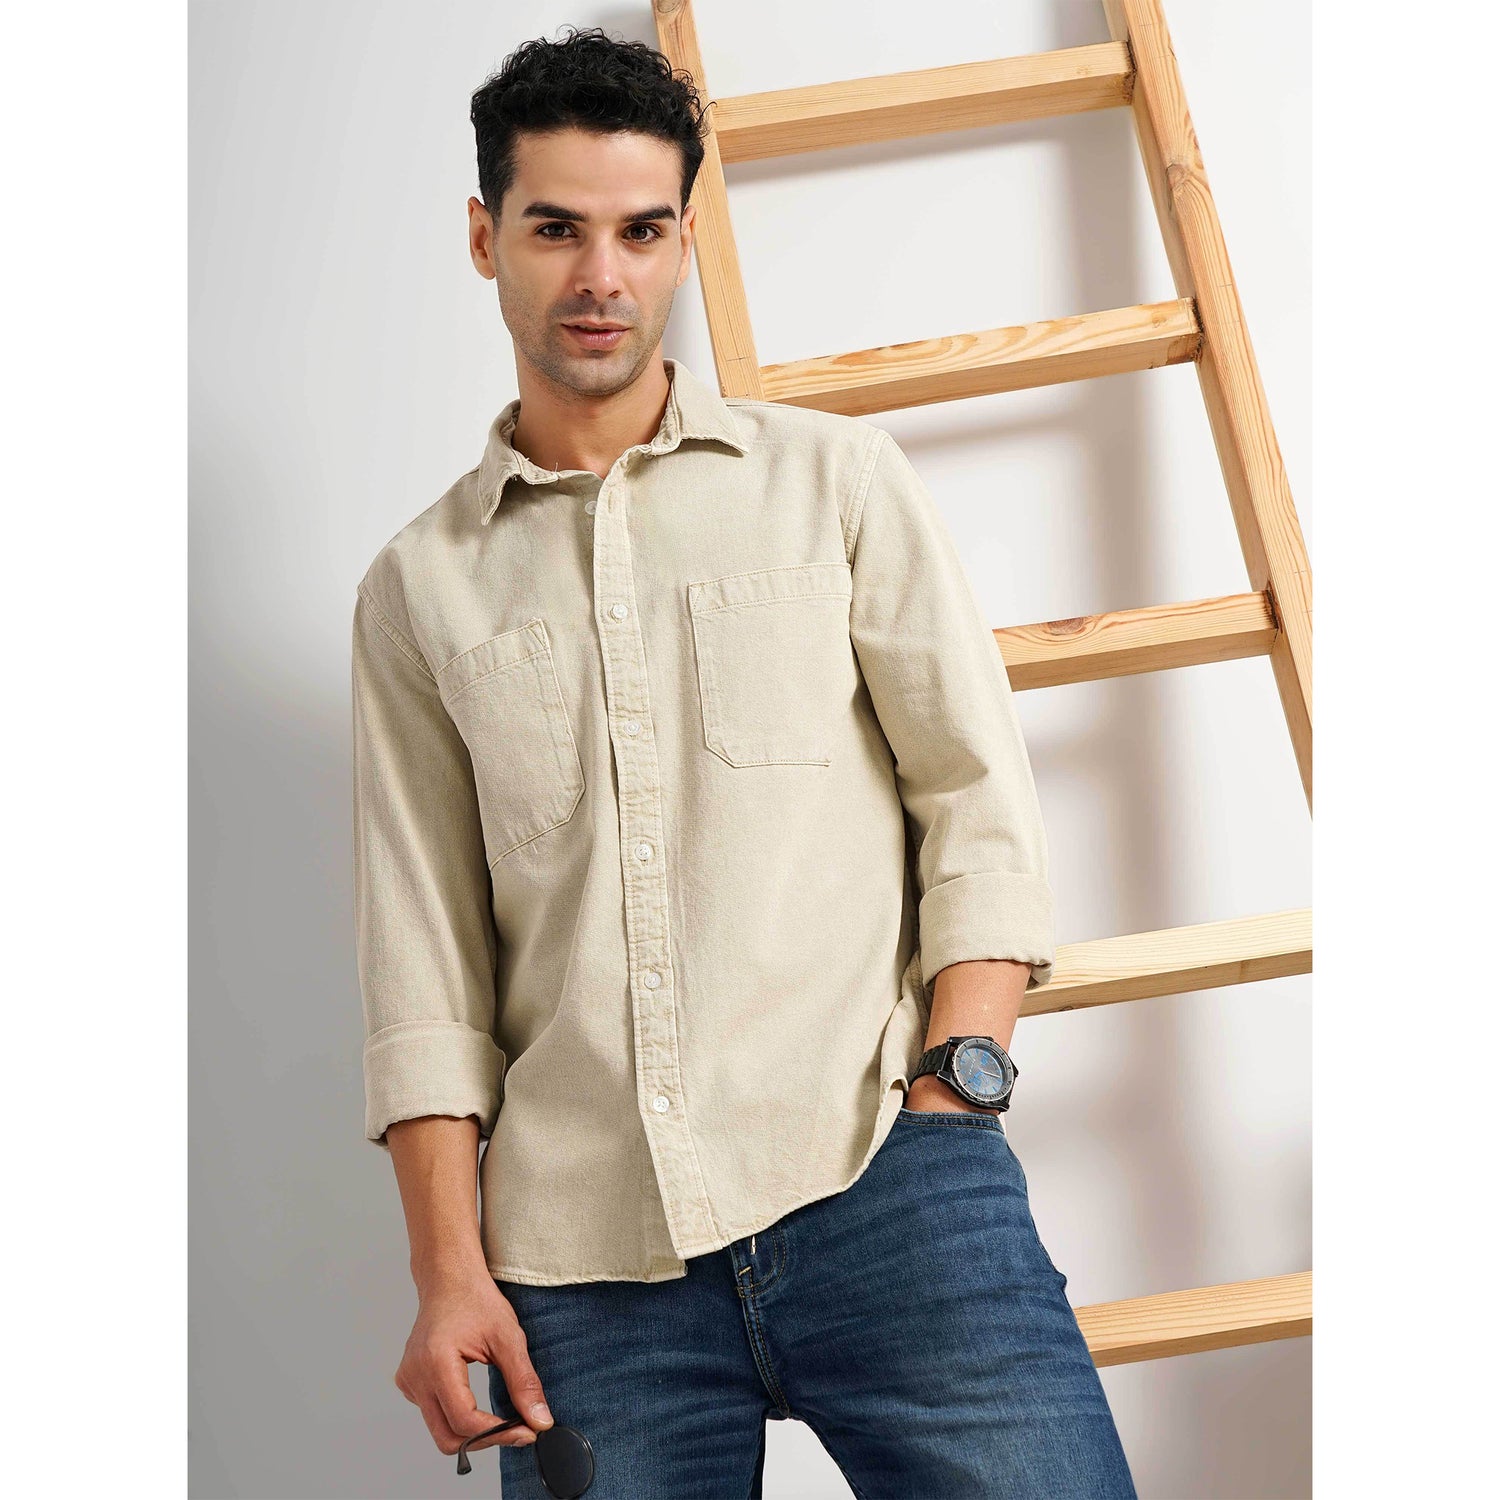 Men's Beige Solid Slim Fit Cotton Denim Casual Shirt (GAINDIEIN)